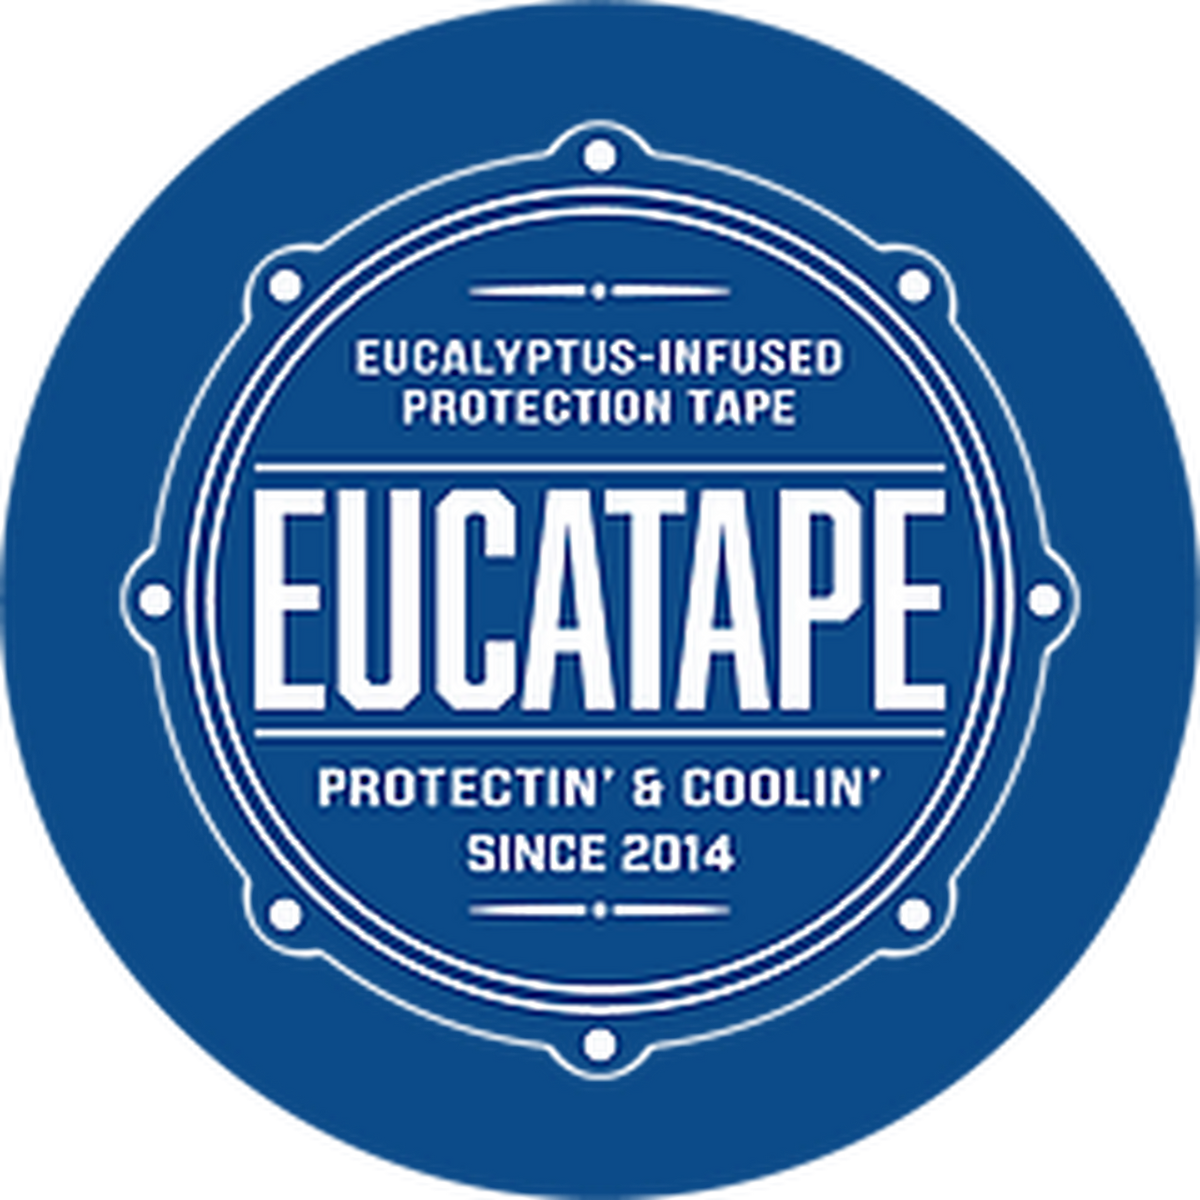 Eucatape for Dancin' - Eucalyptus infused foot/blister tape – Dance Irish